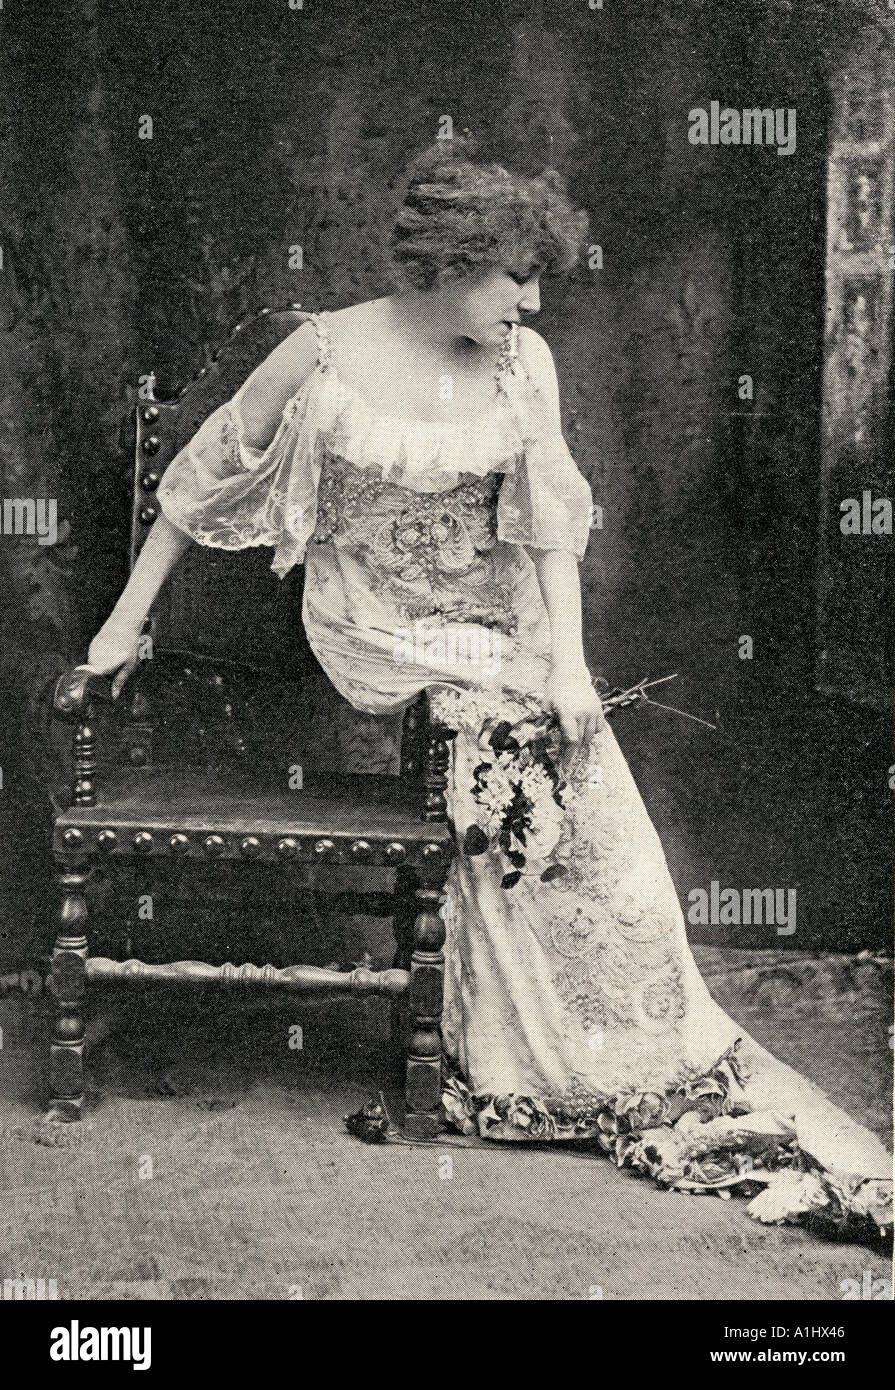 Sarah Bernhardt comme Camille. Sarah Bernhardt Henriette Rosine Bernard, 1844 - 1923. L'actrice française. Banque D'Images